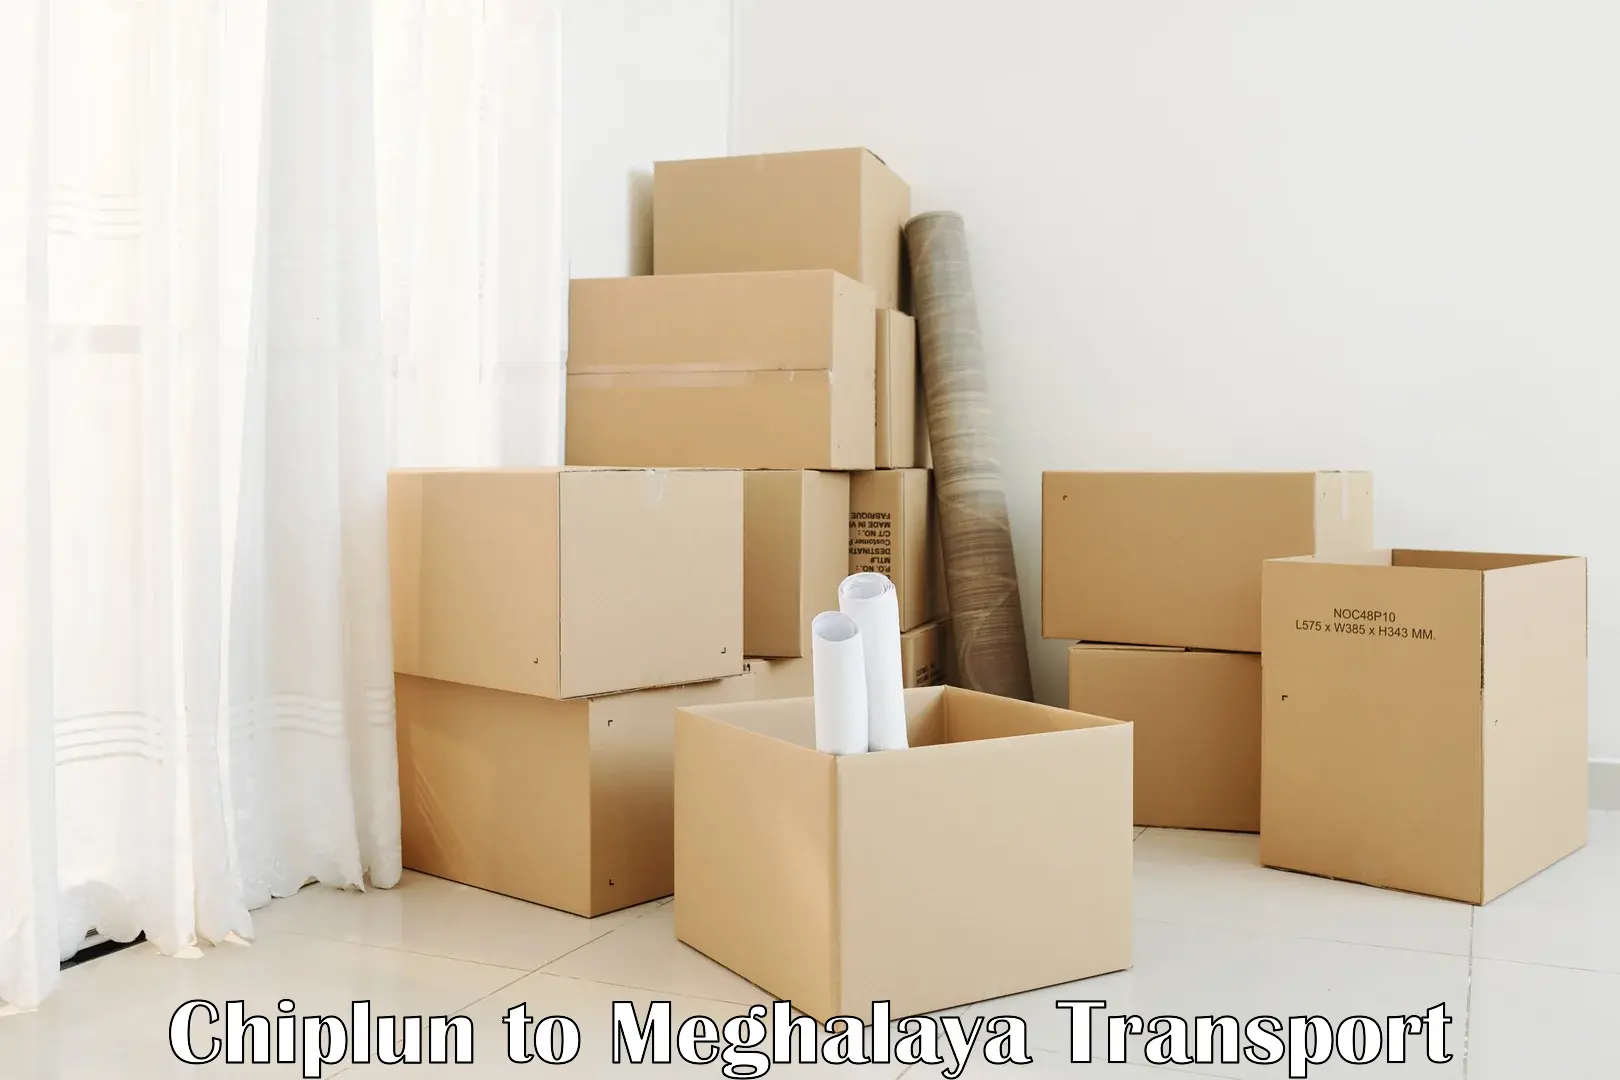 Shipping partner Chiplun to NIT Meghalaya